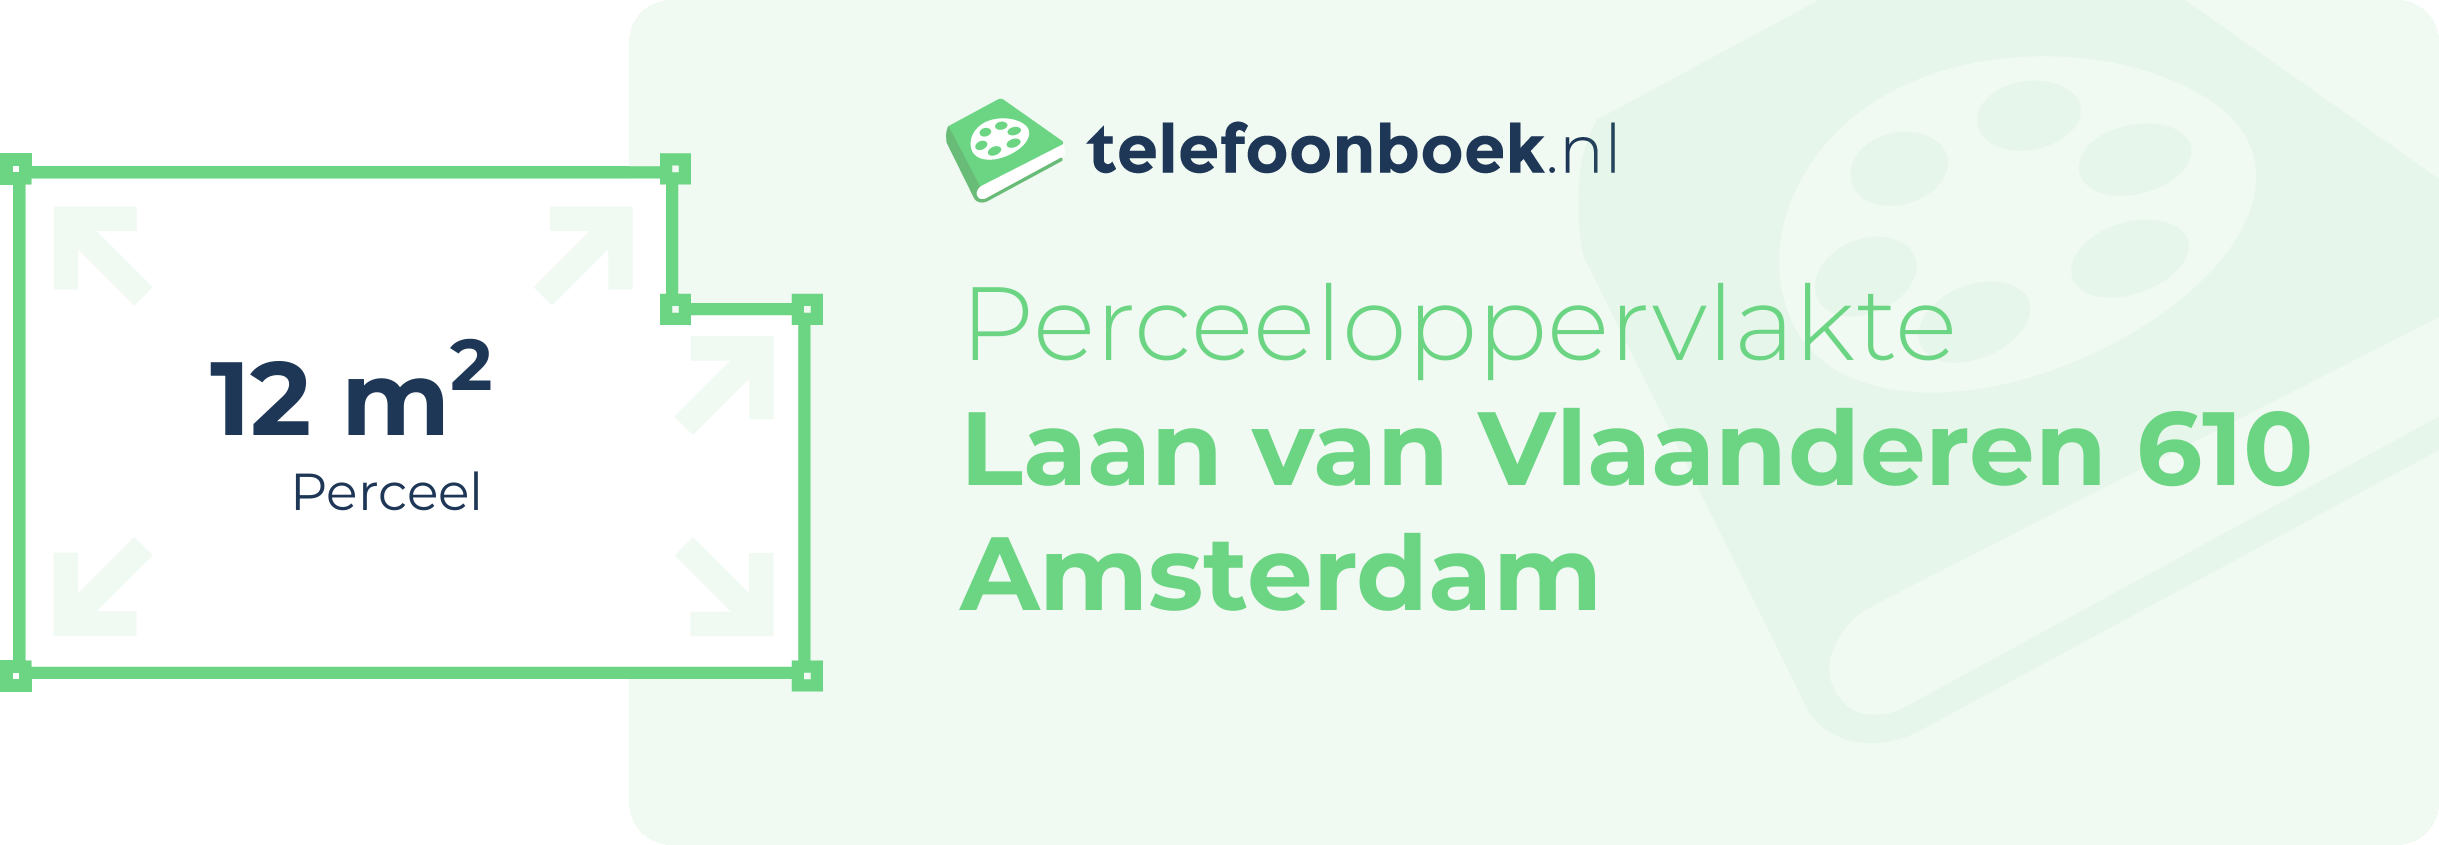 Perceeloppervlakte Laan Van Vlaanderen 610 Amsterdam